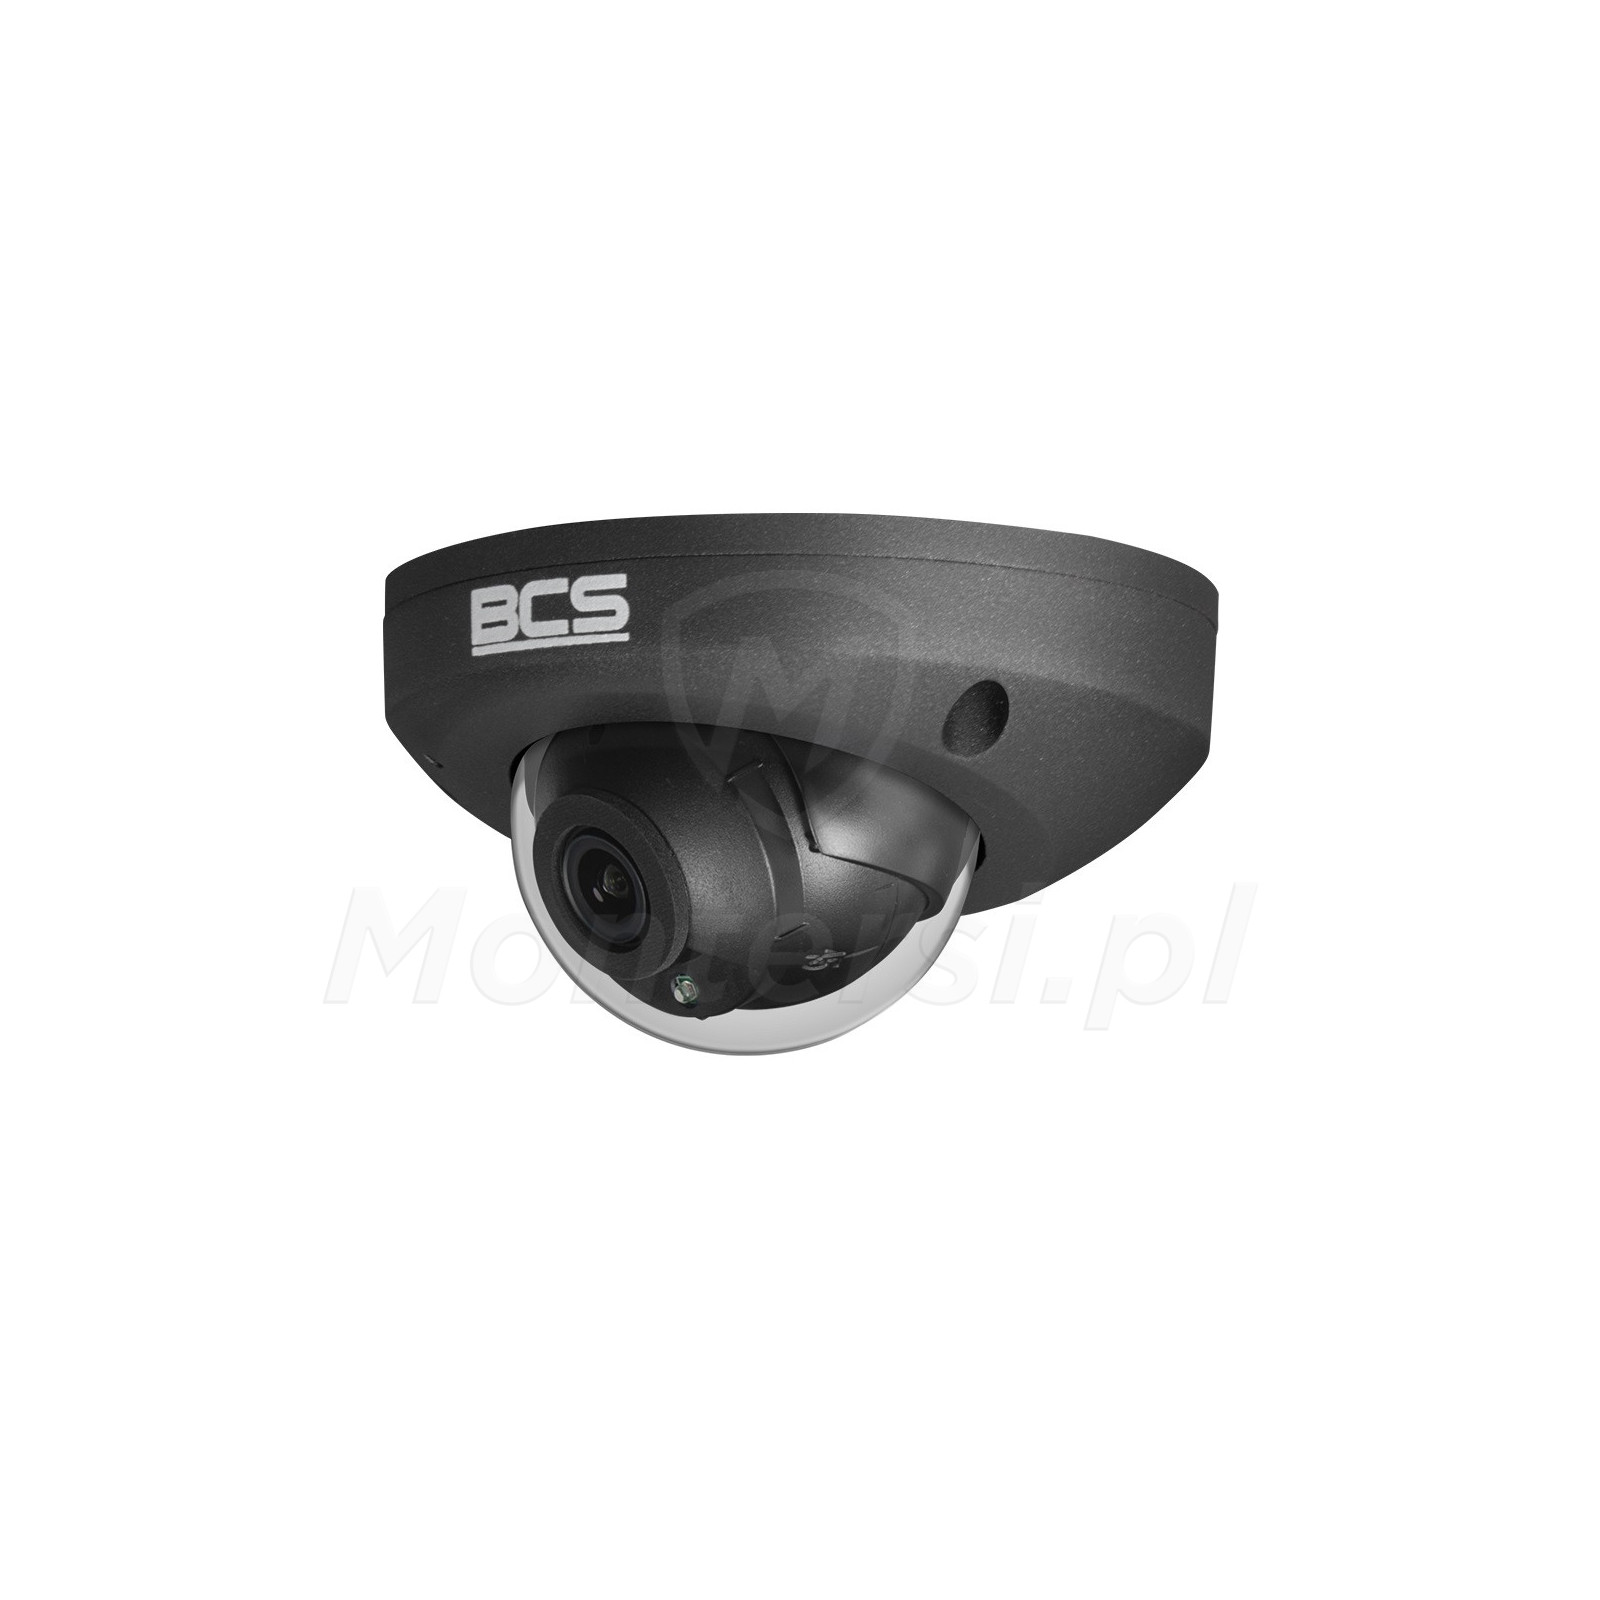 Wandaloodporna kamera IP BCS-P-DMIP24FSR3-Ai2-G